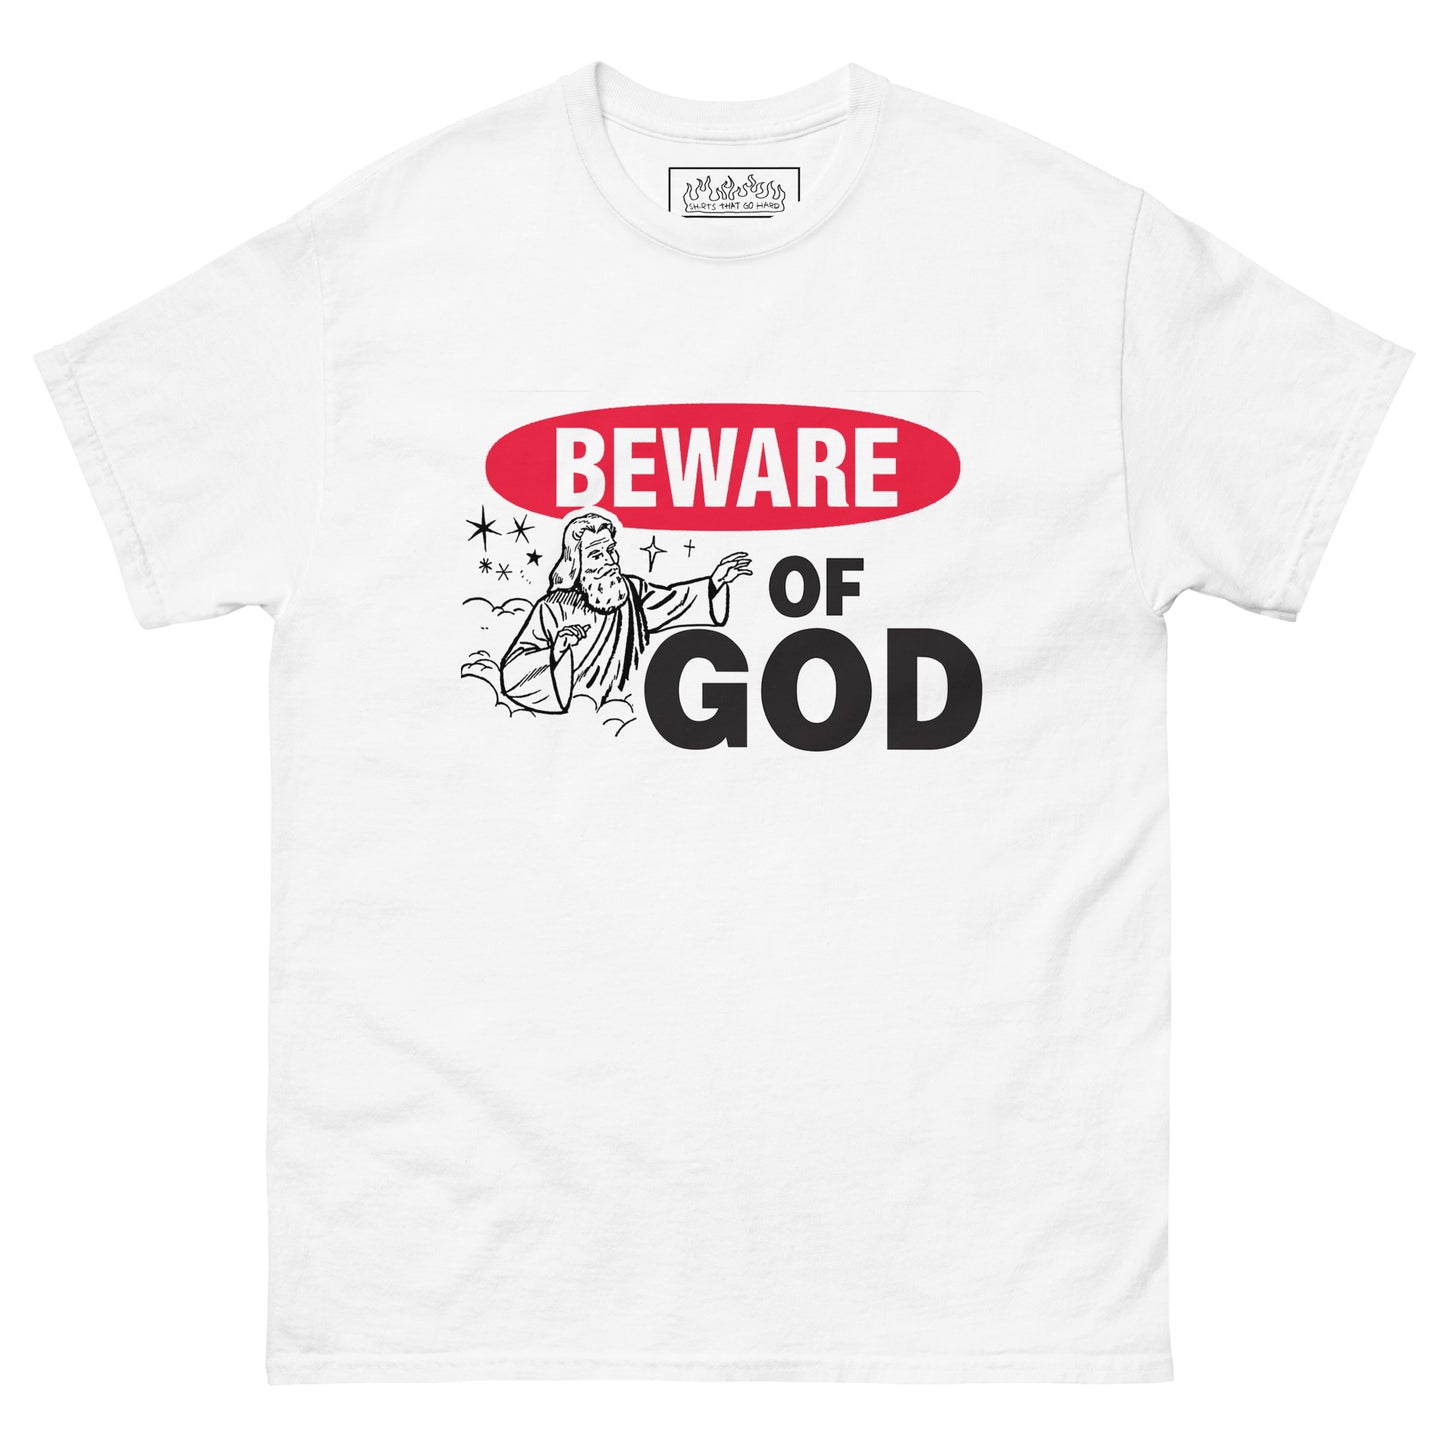 Beware of God.